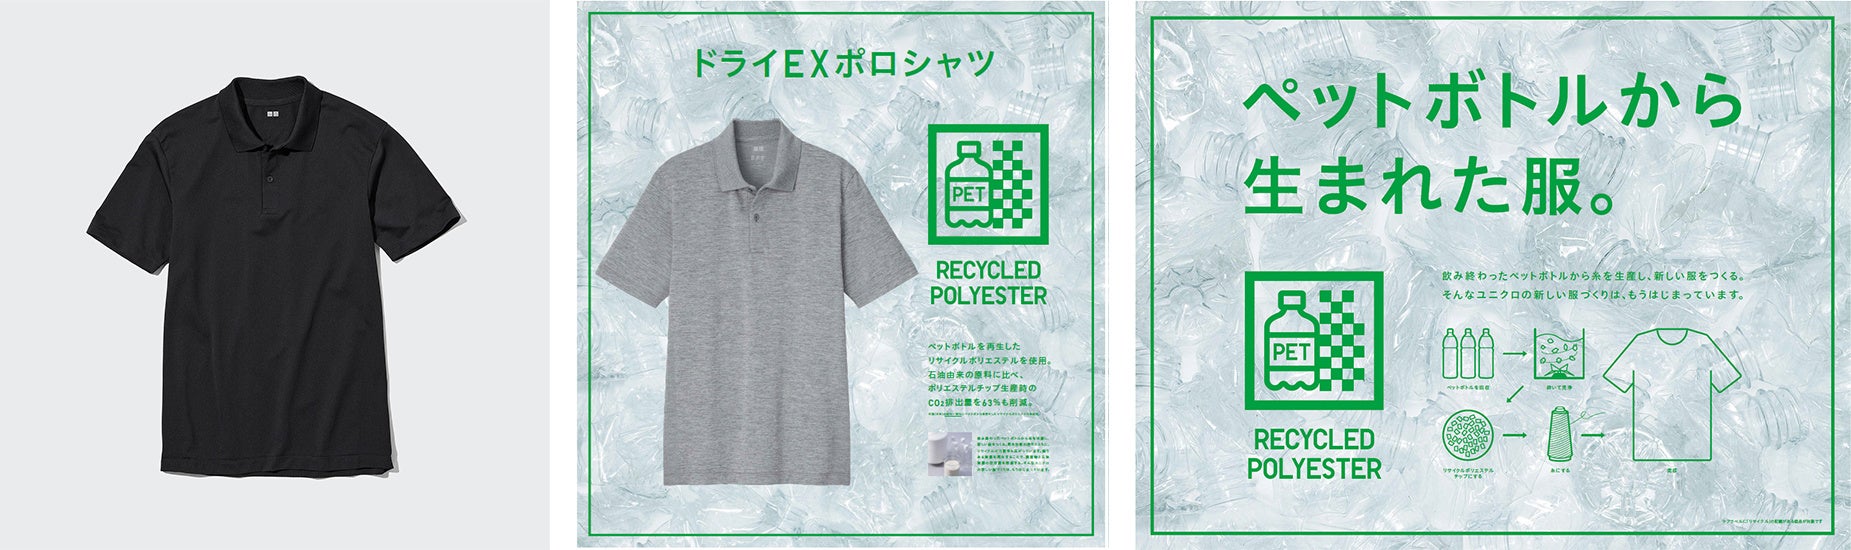 東急スポーツオアシスは各店舗ユニフォームを株式会社ユニクロ製品に変更し、衣料リサイクル活動に参画しますのサブ画像2